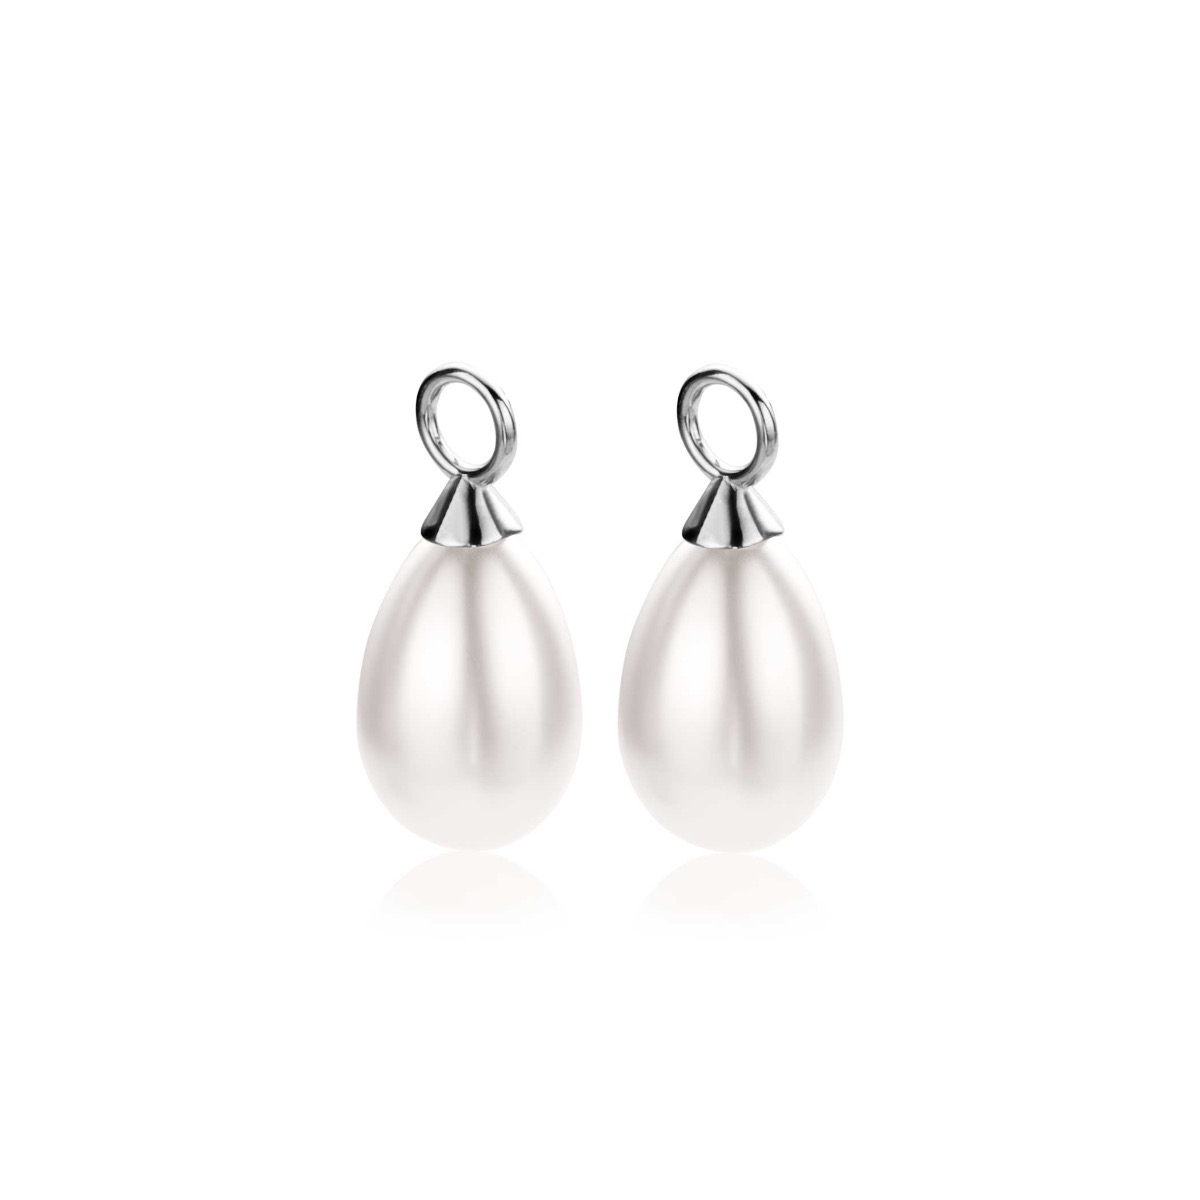 15mm ZINZI Sterling Silver Earrings Pendants Pearl White in Pear-shape ZICH355W (excl. hoop earrings)